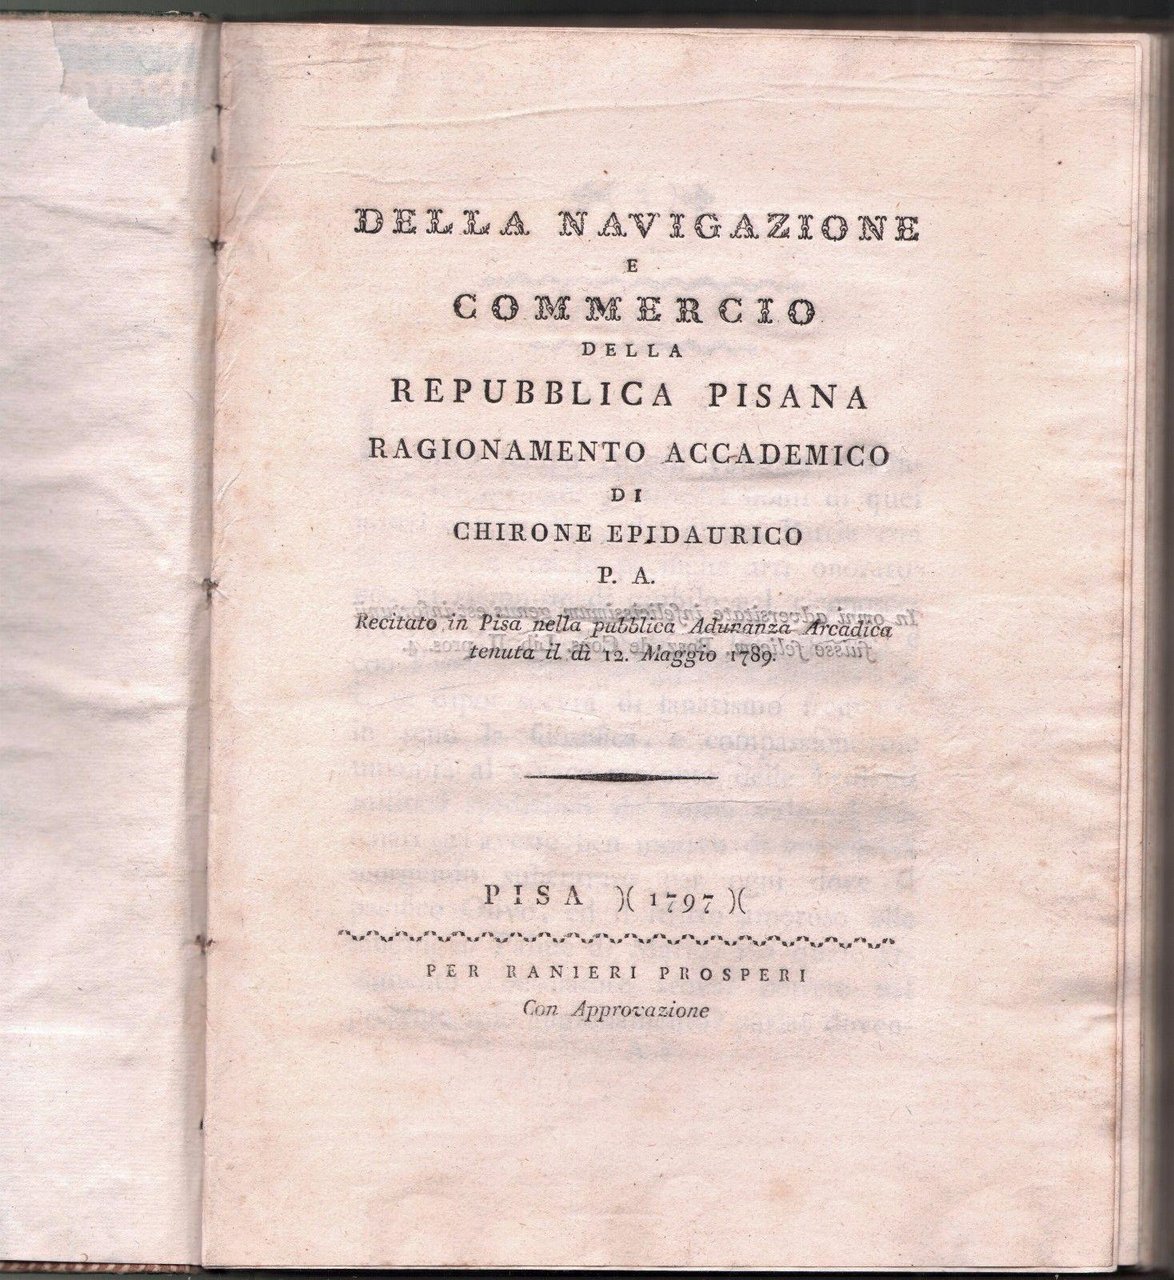 MONETE-NUMISMATICA-DELLA NAVIGAZIONE COMMERCIO DELLA REPUBBLICA PISANA-PISA 1797